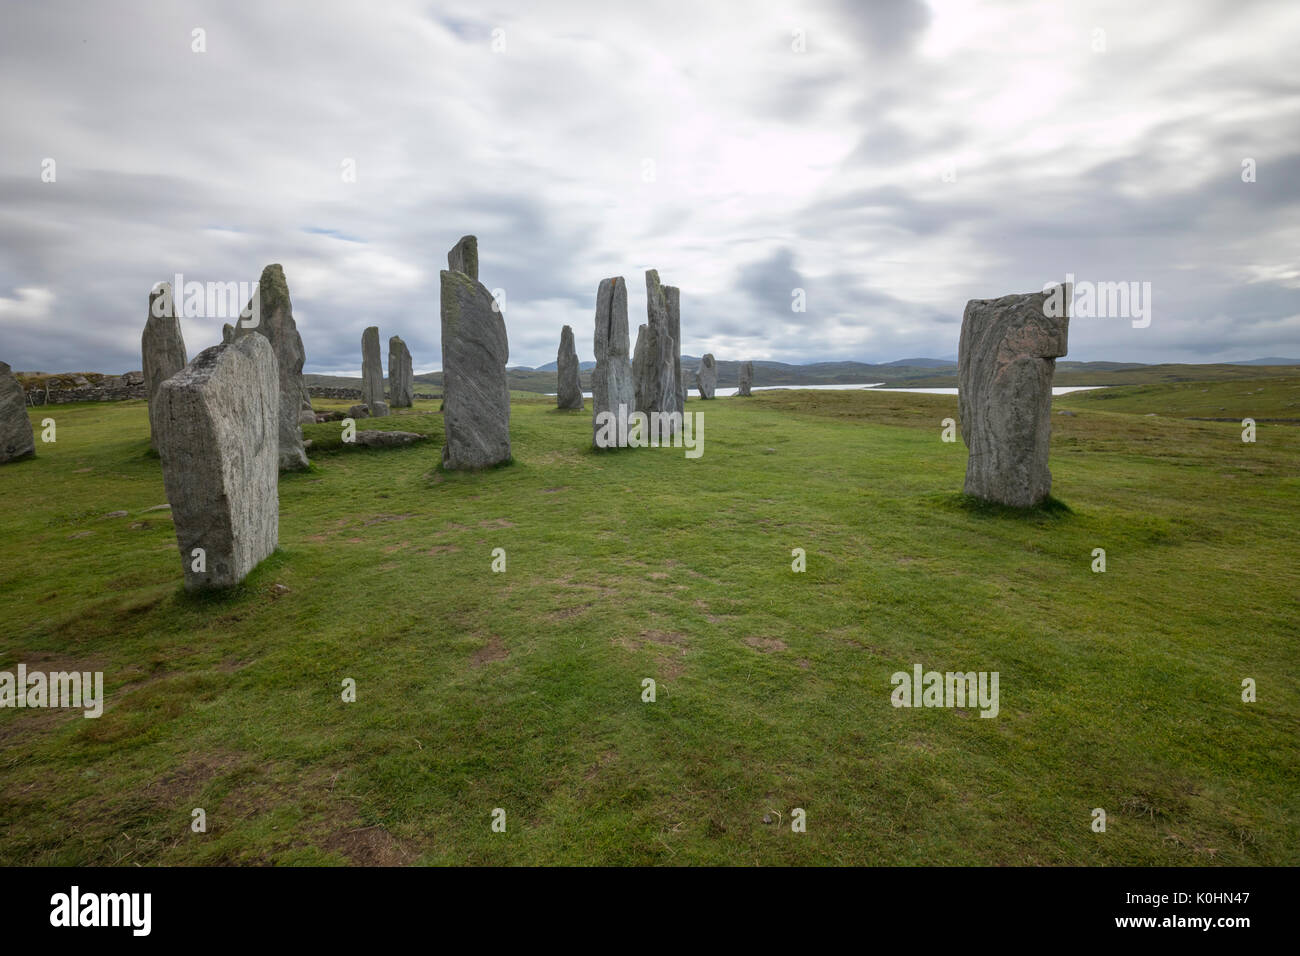 Callanish Standing Stones dans un jour nuageux, , pierres placées dans un motif cruciforme avec un cercle central en pierre, Callanish, Ecosse, Royaume-Uni Banque D'Images